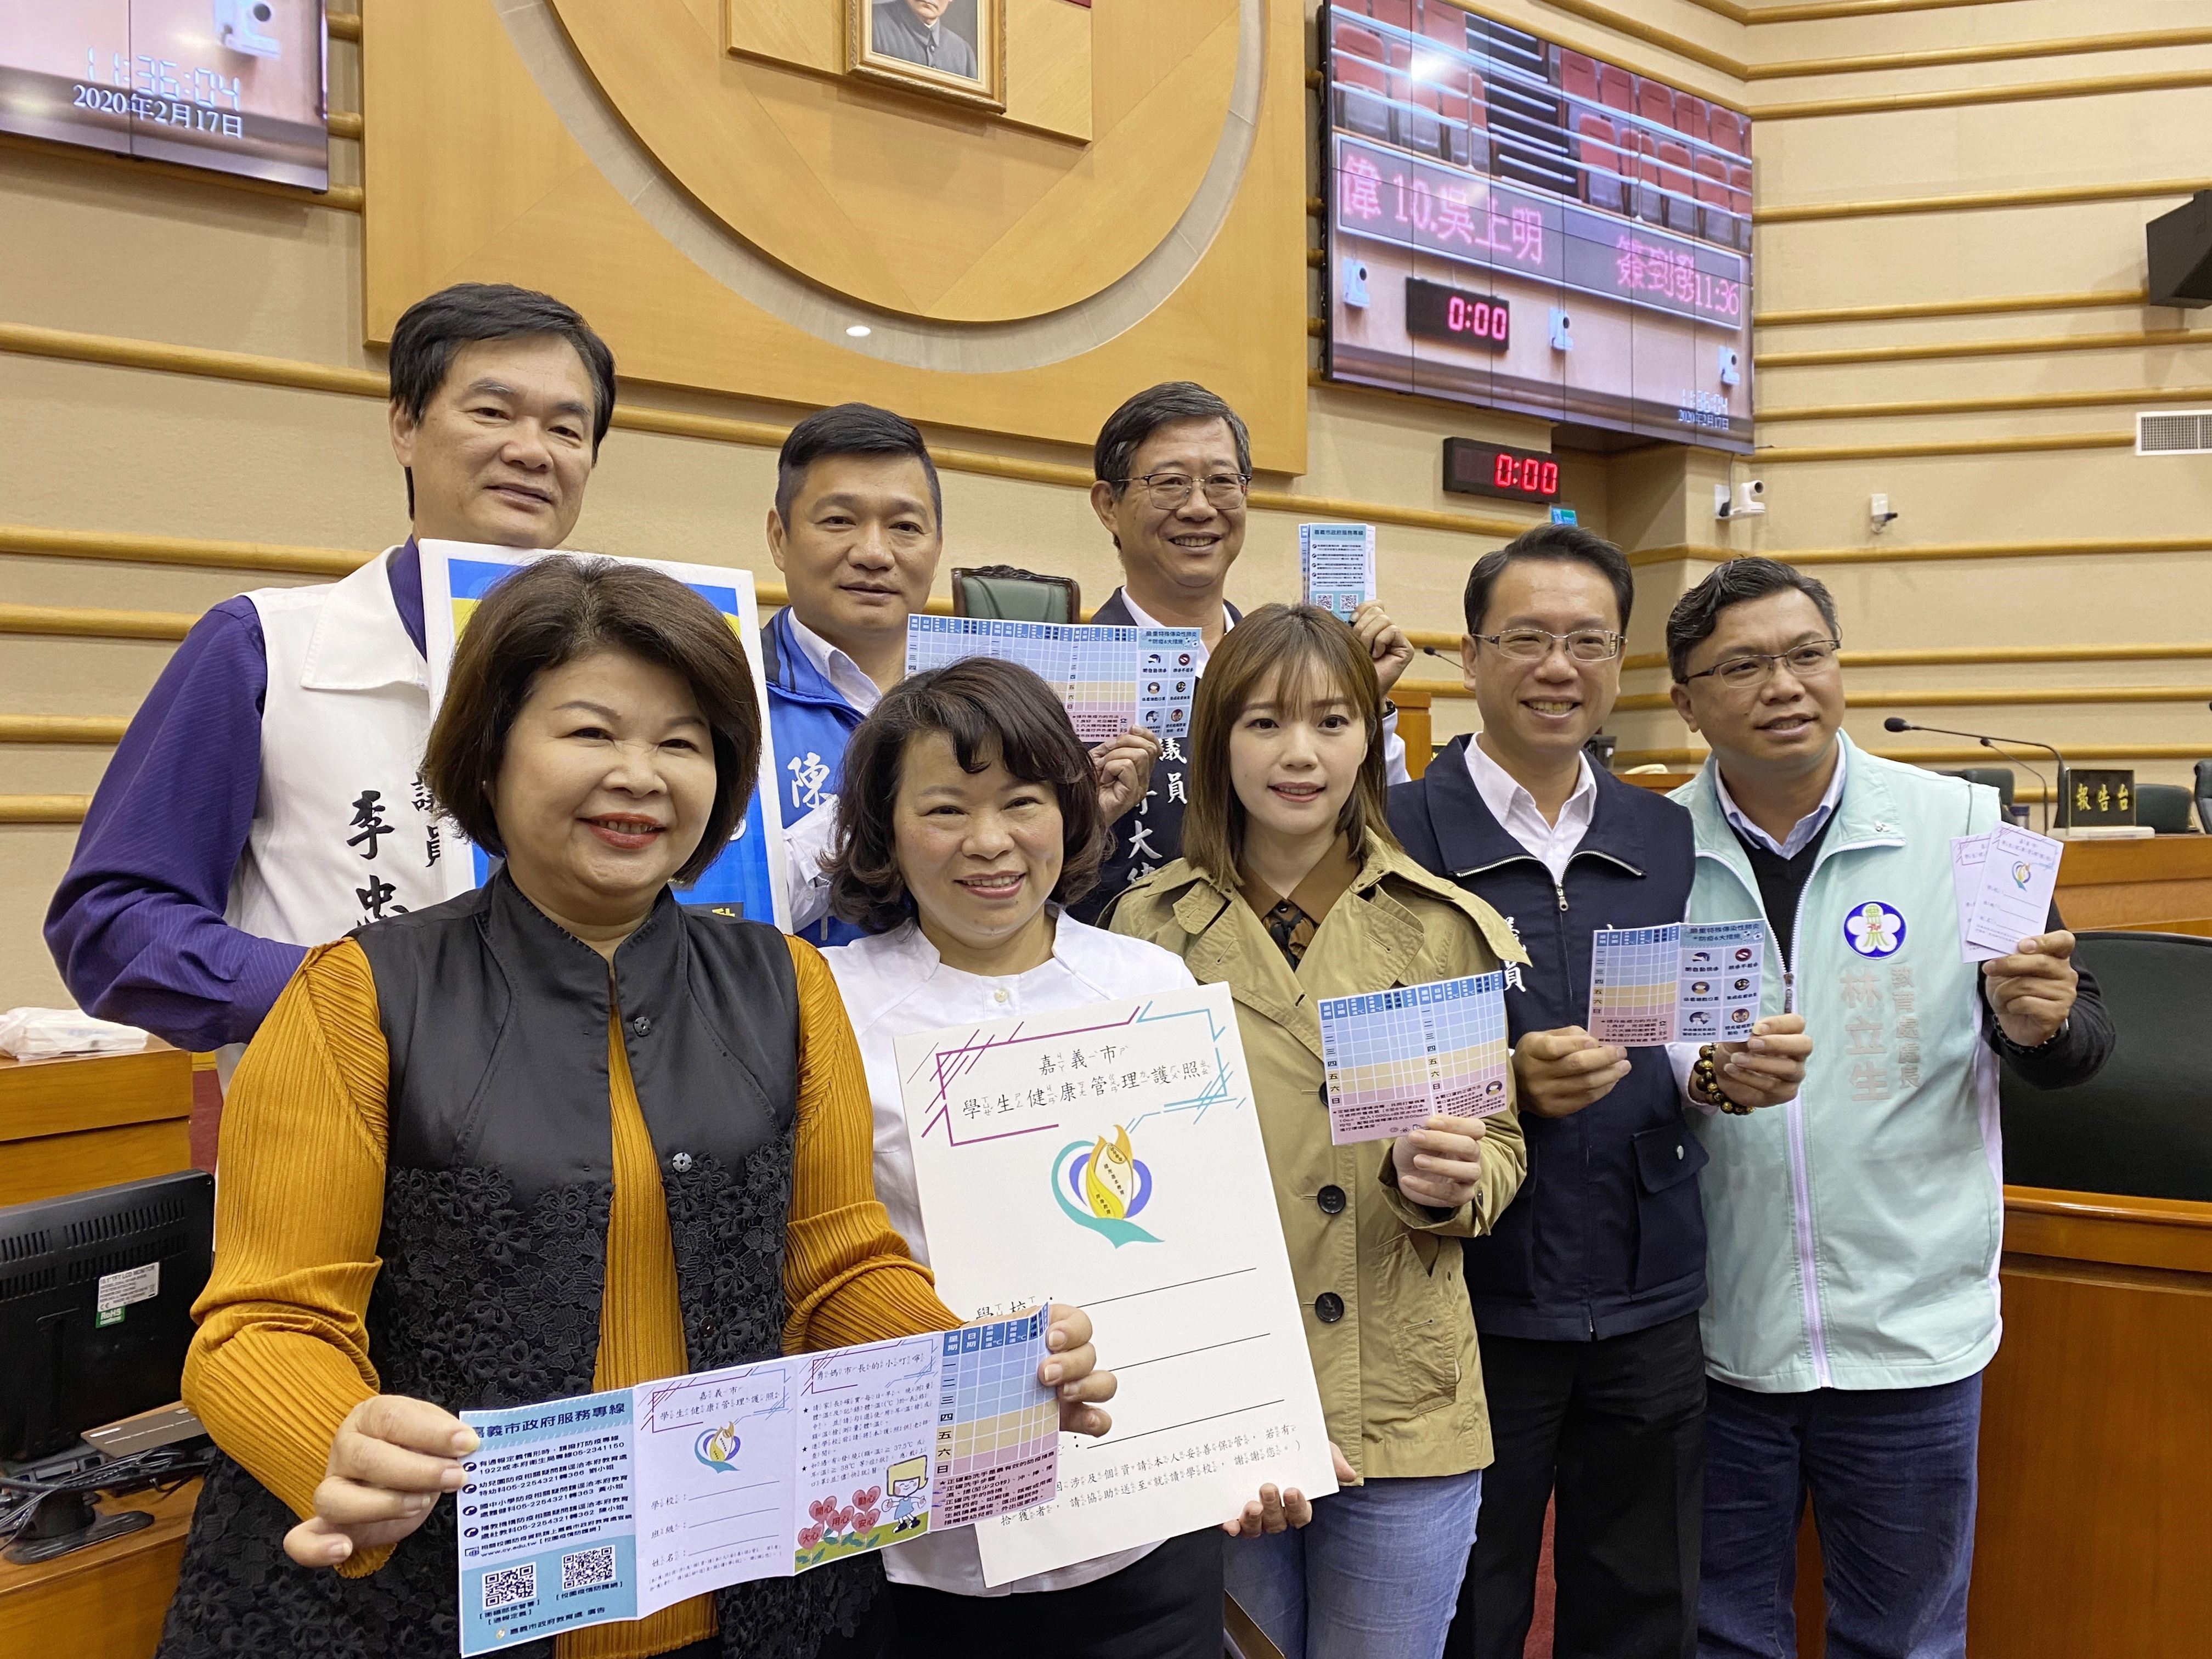 黃敏惠市長帶領市府團隊 針對武漢肺炎防疫應變提出專題報告